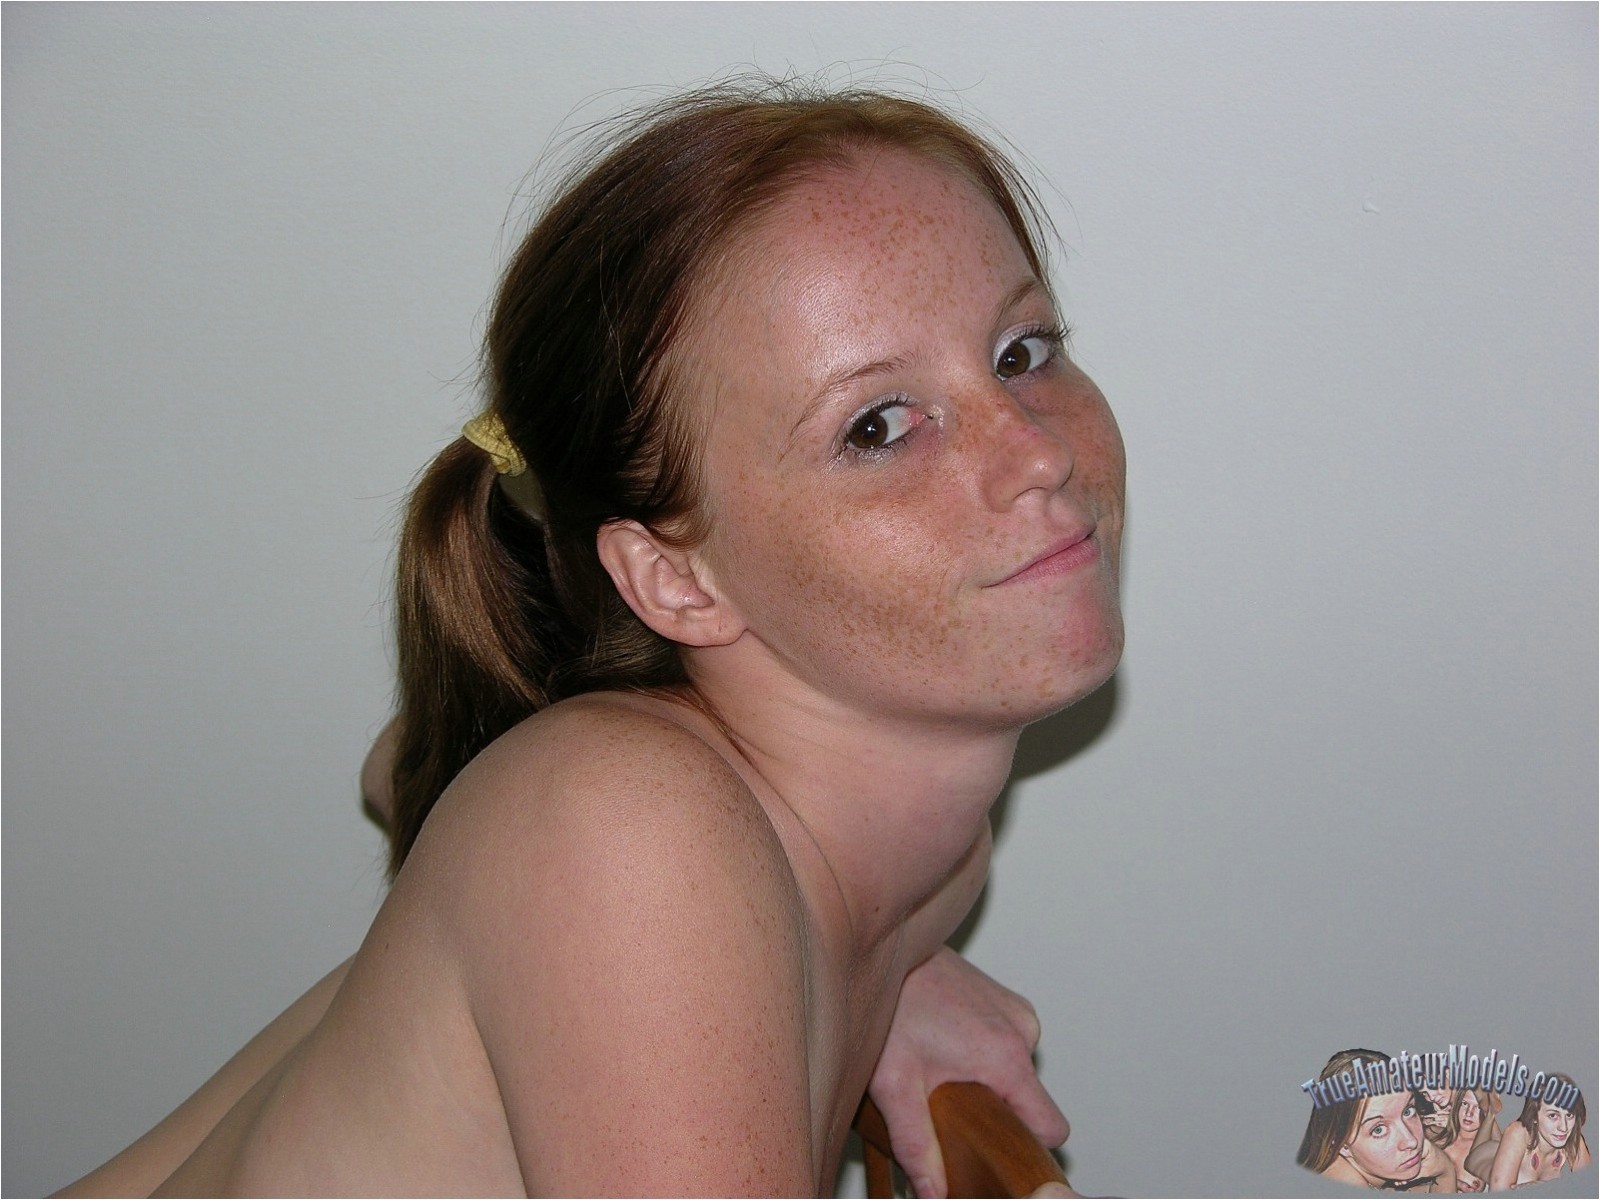 Amateur sommersprossiges Gesicht zierlicher Teenager modelliert nackt - echte Amateur-Modelle
 #67097878